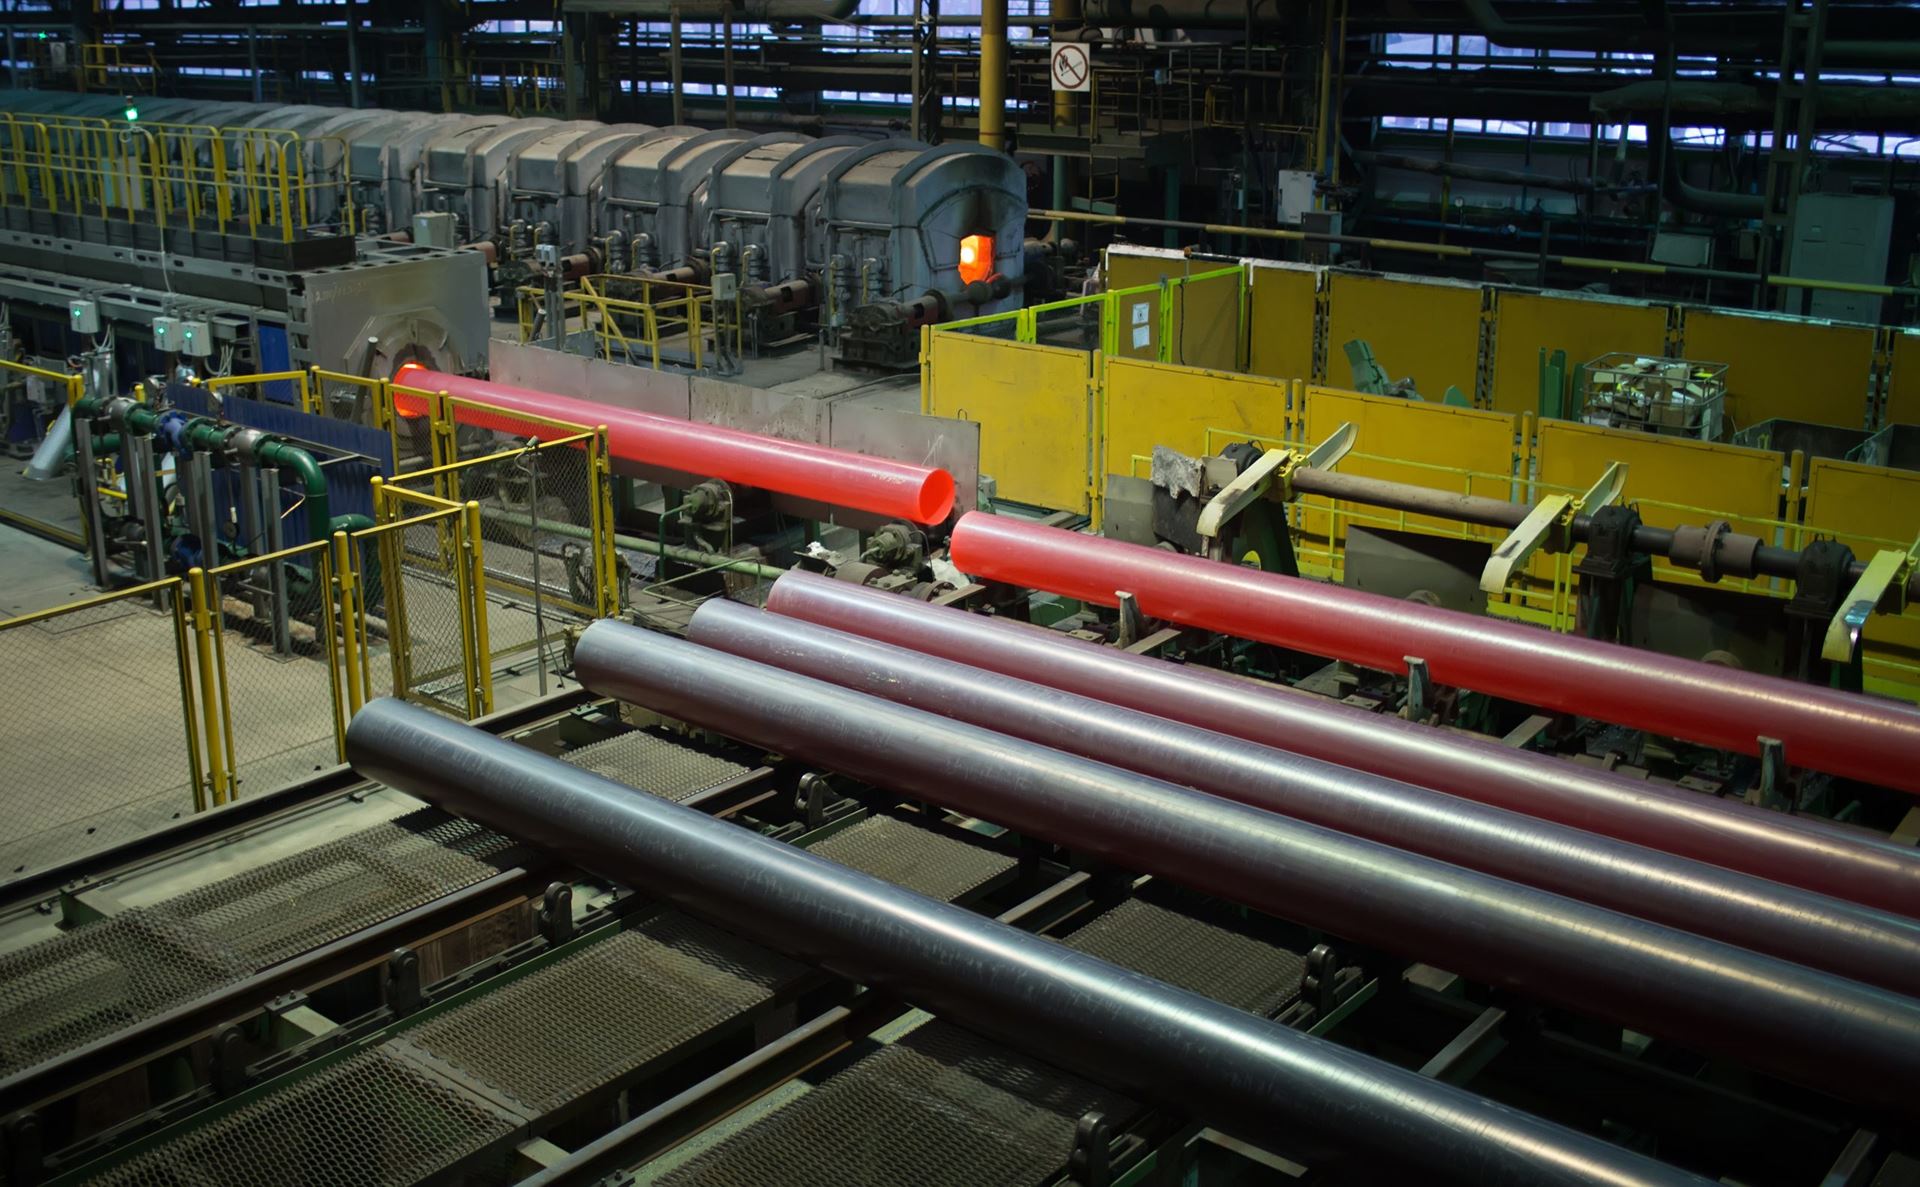 Vyksa Steel's pipe shipments decreased in July